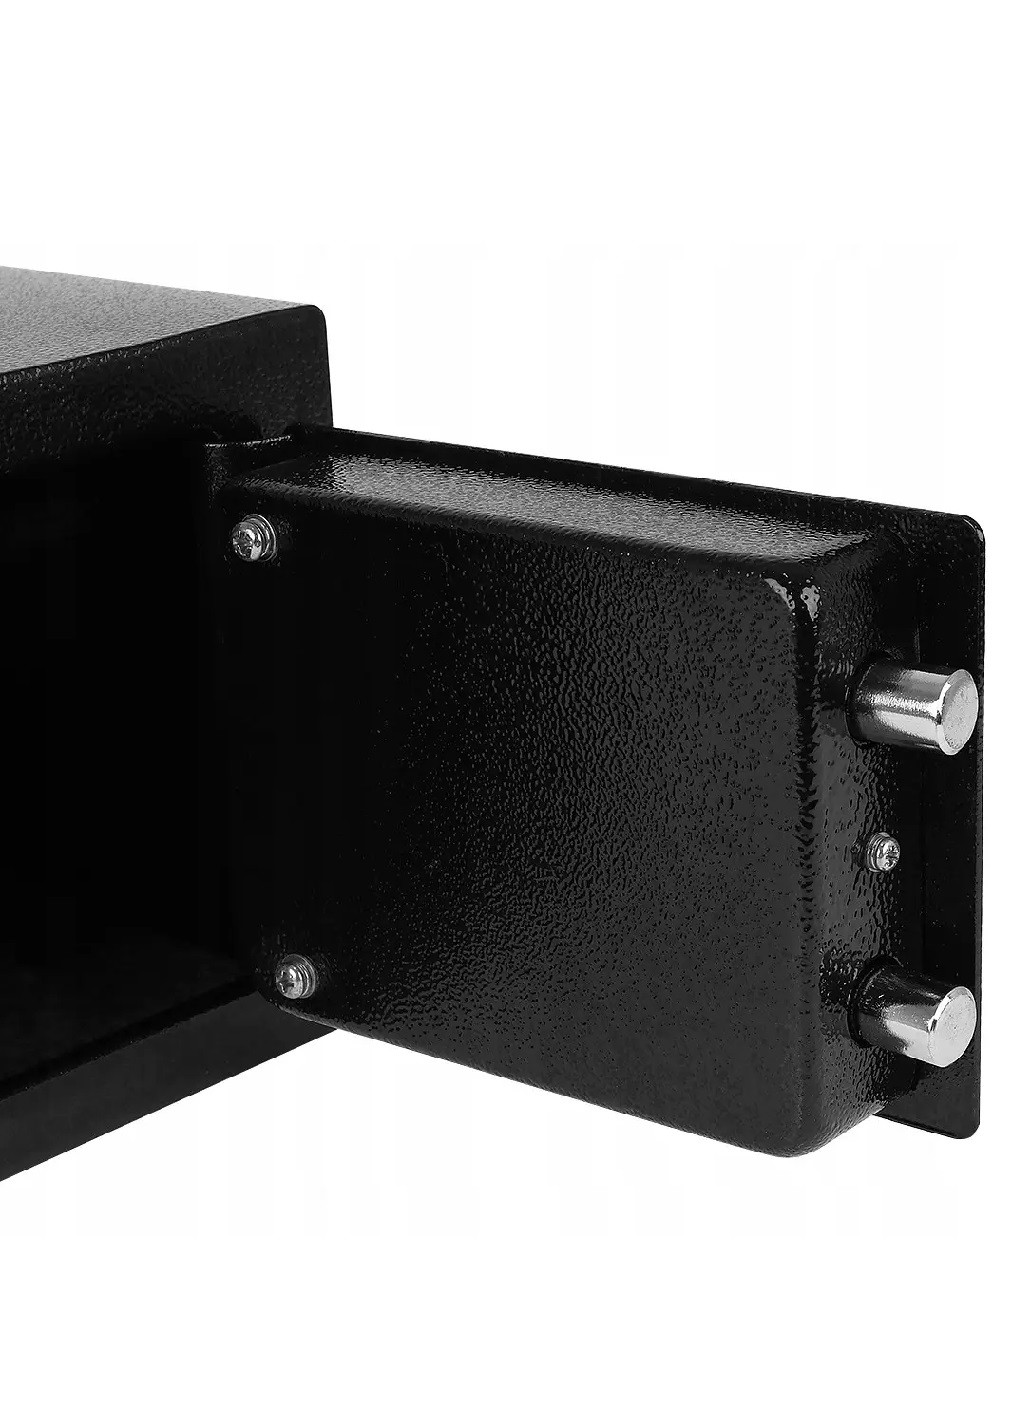 Мебельный металлический сейф с ключами для дома офиса с возможностью подвешивания 23х17х17см (475145-Prob) Черный Unbranded (262371408)